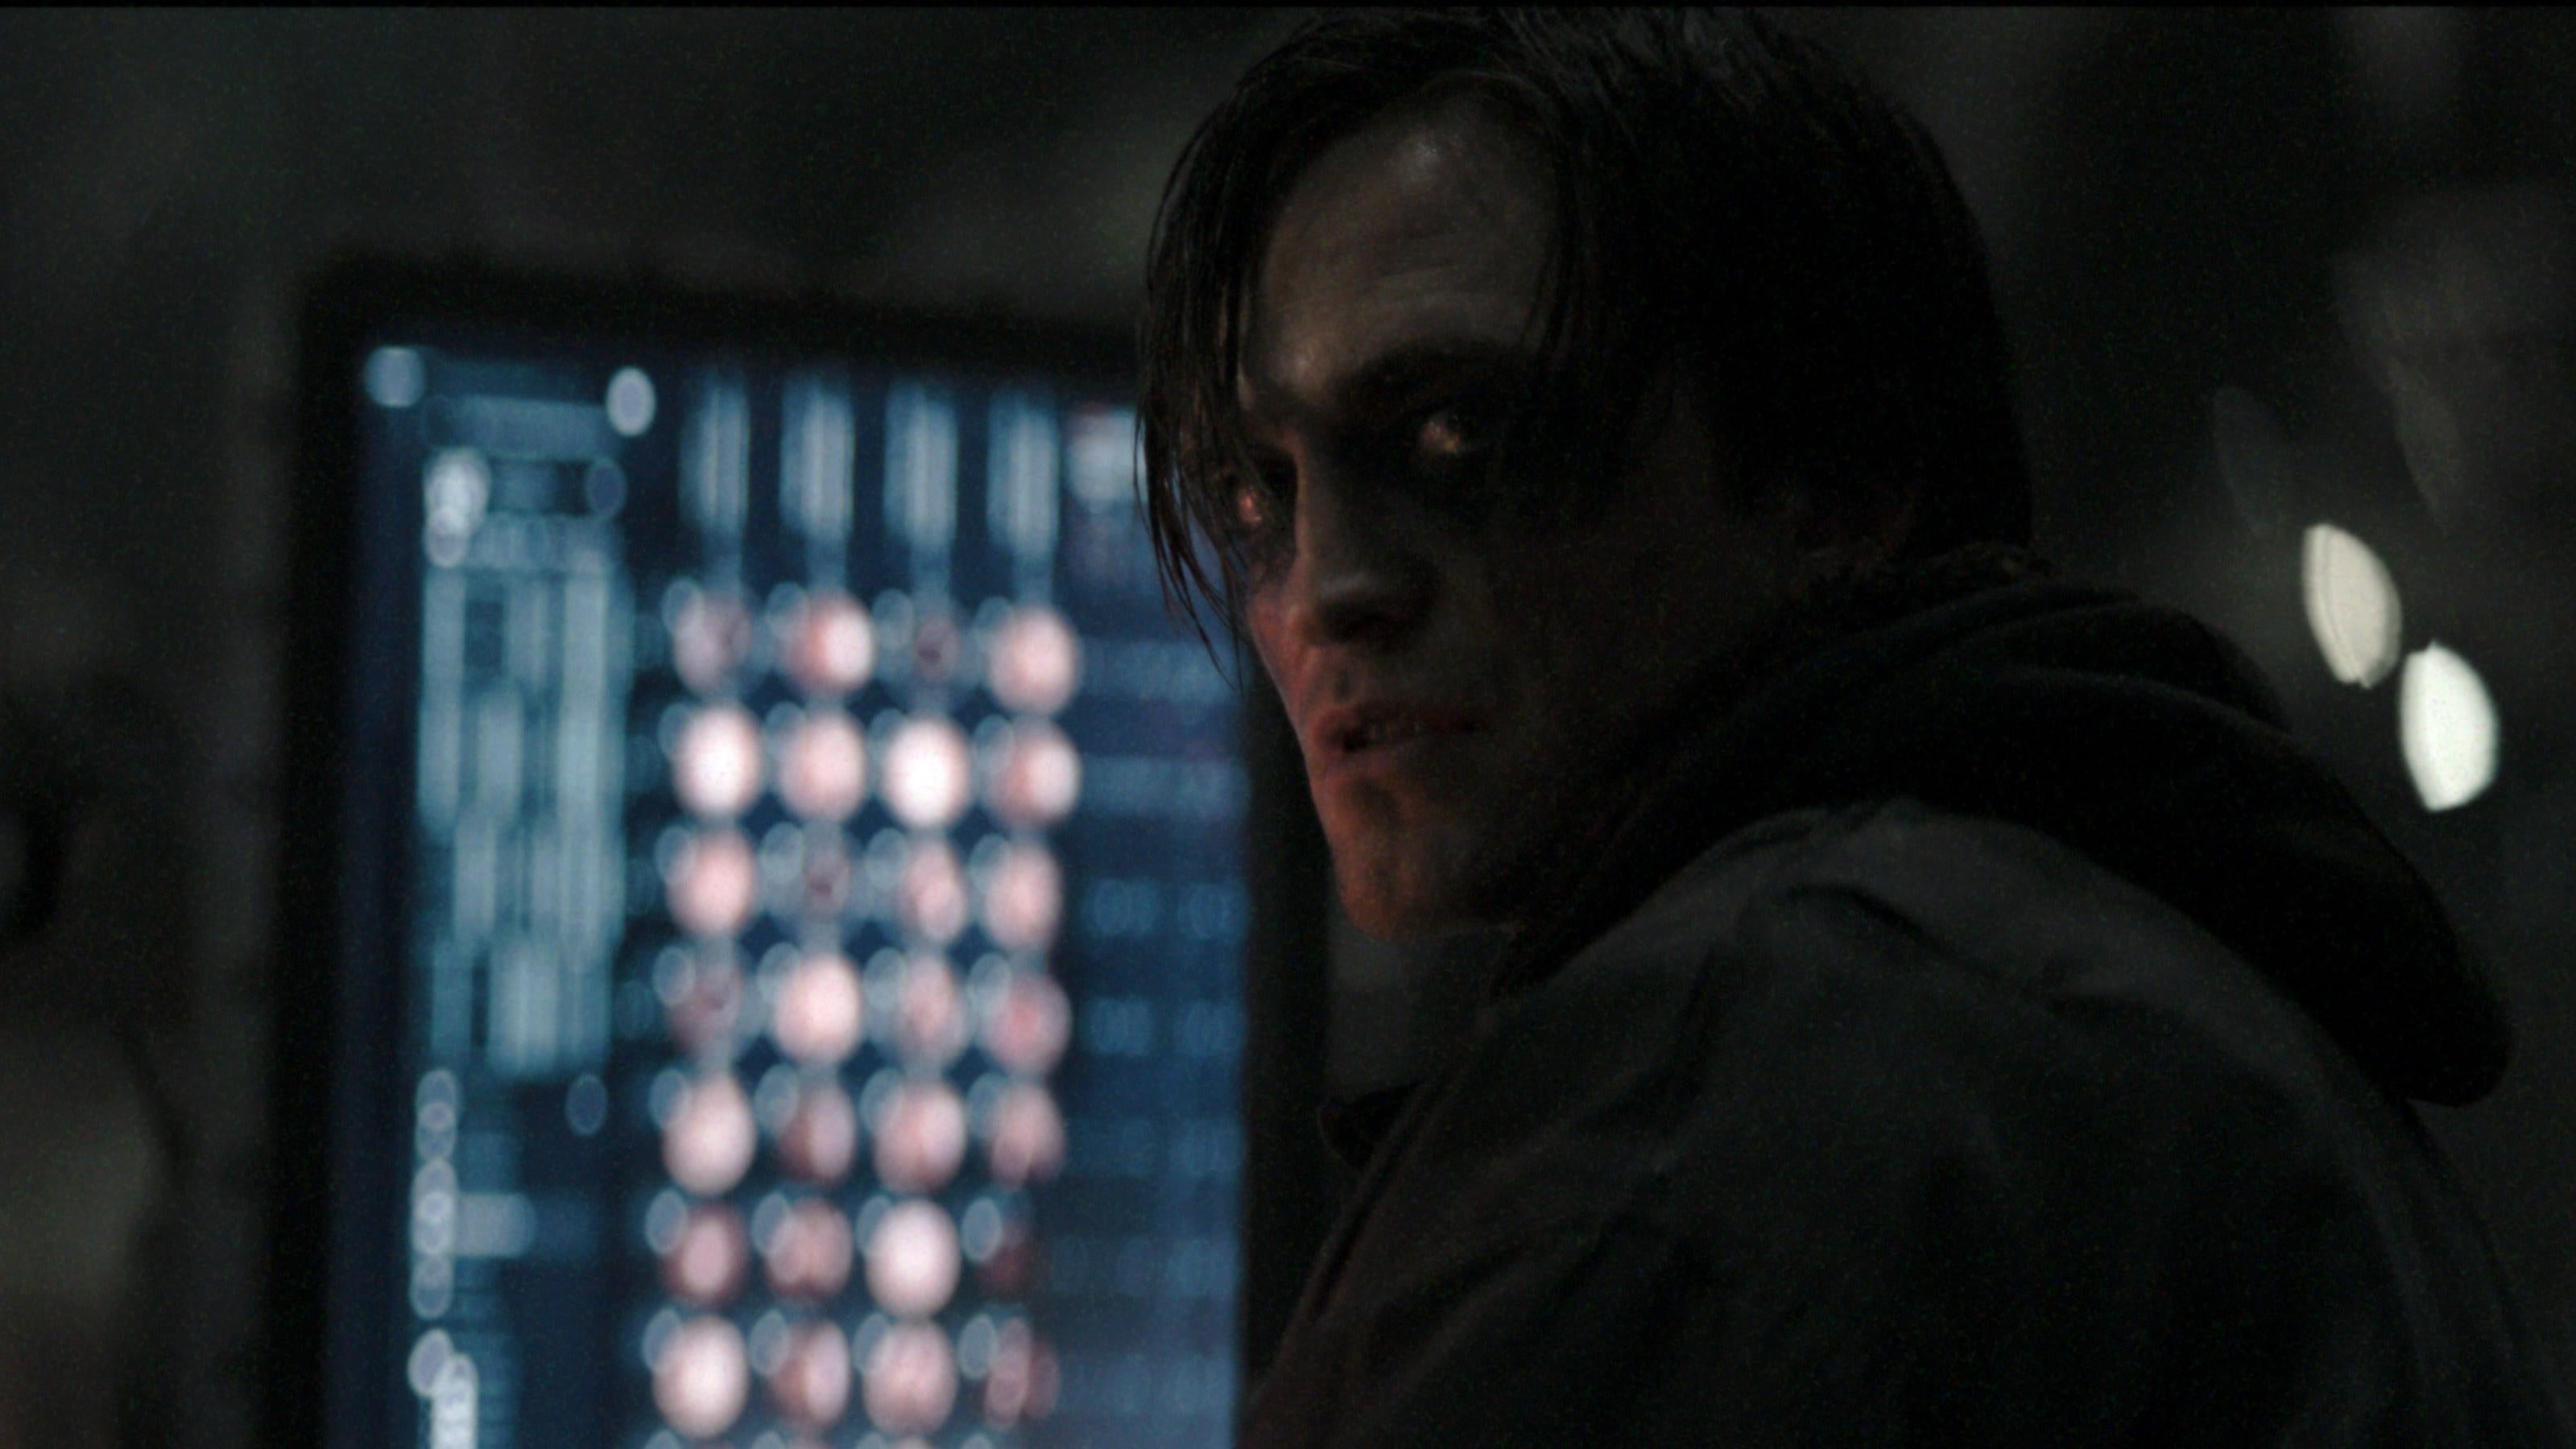 Bruce Wayne forgot to take his Bat makeup off. (Image: Warner Bros.)